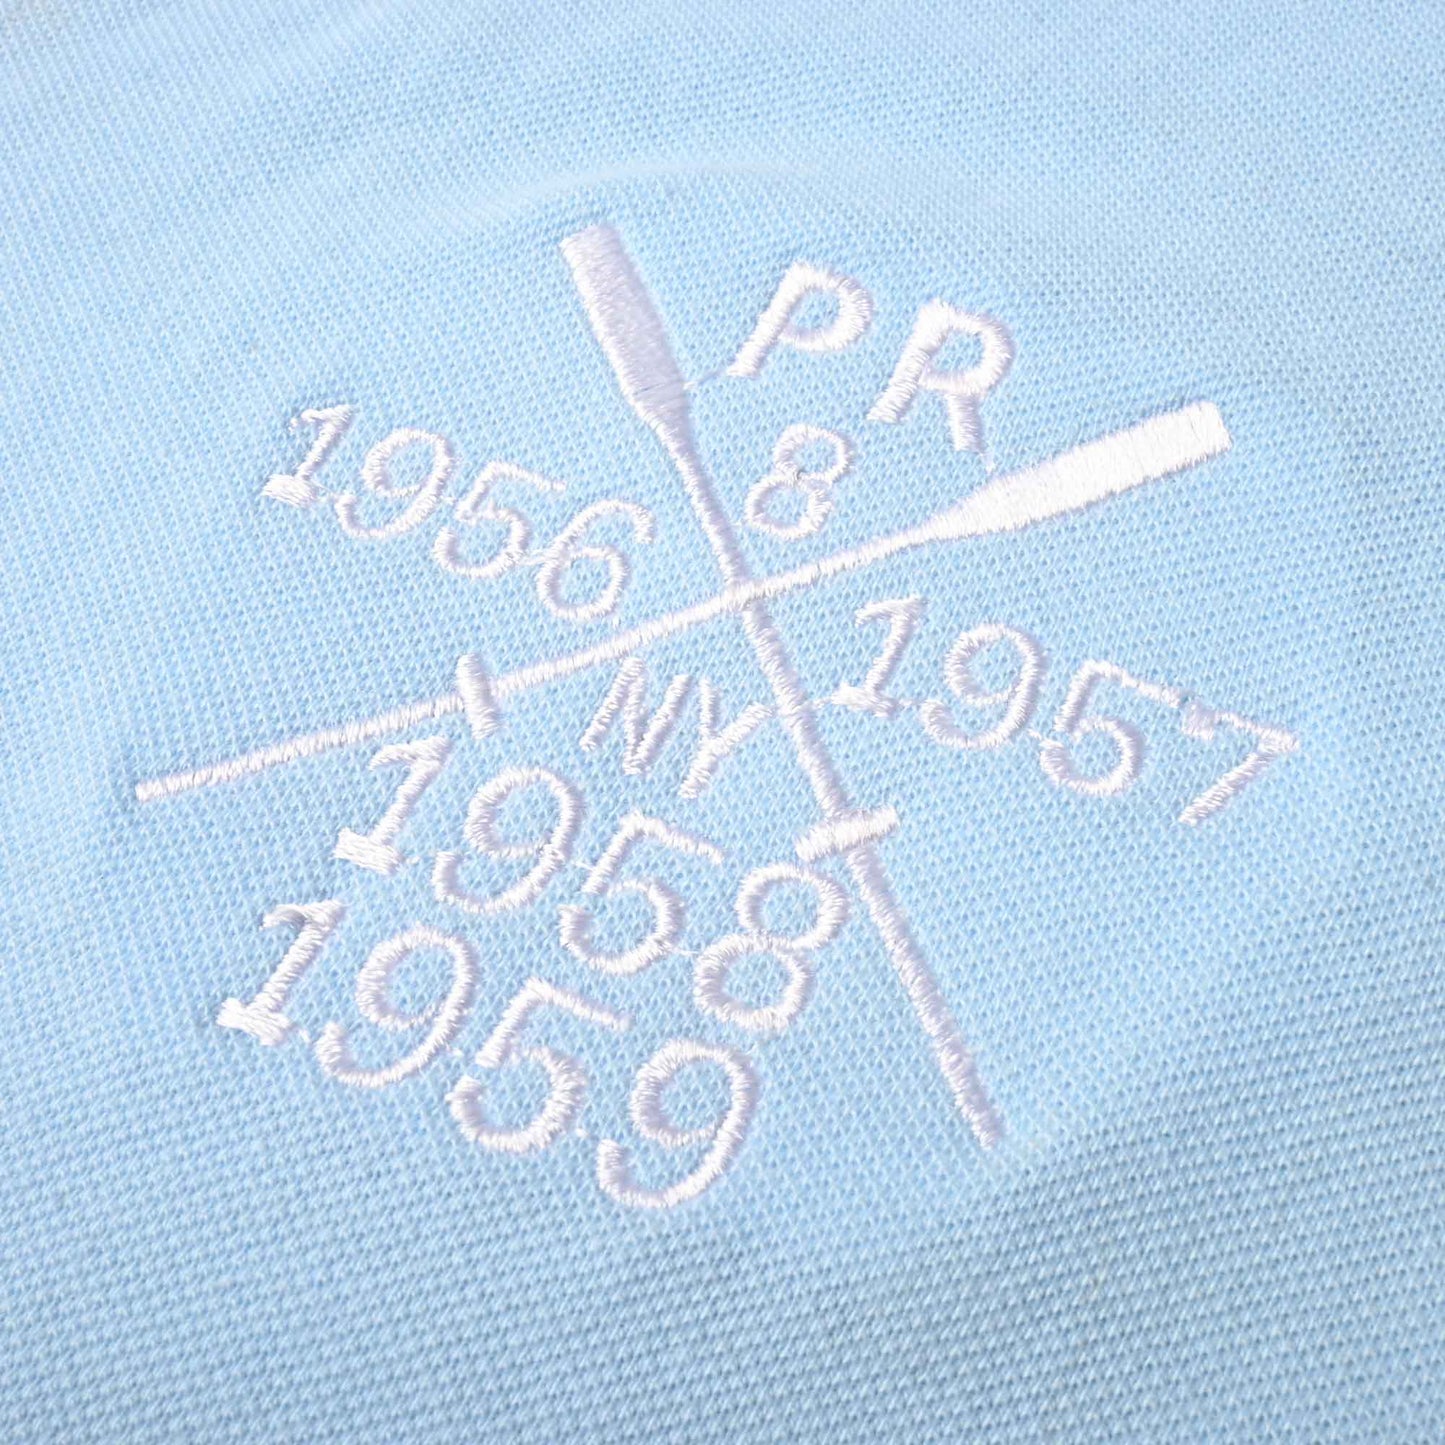 Polo Republica Men's Two Polo Rider & PR Mallets Embroidered Short Sleeve Polo Shirt Men's Polo Shirt Polo Republica 